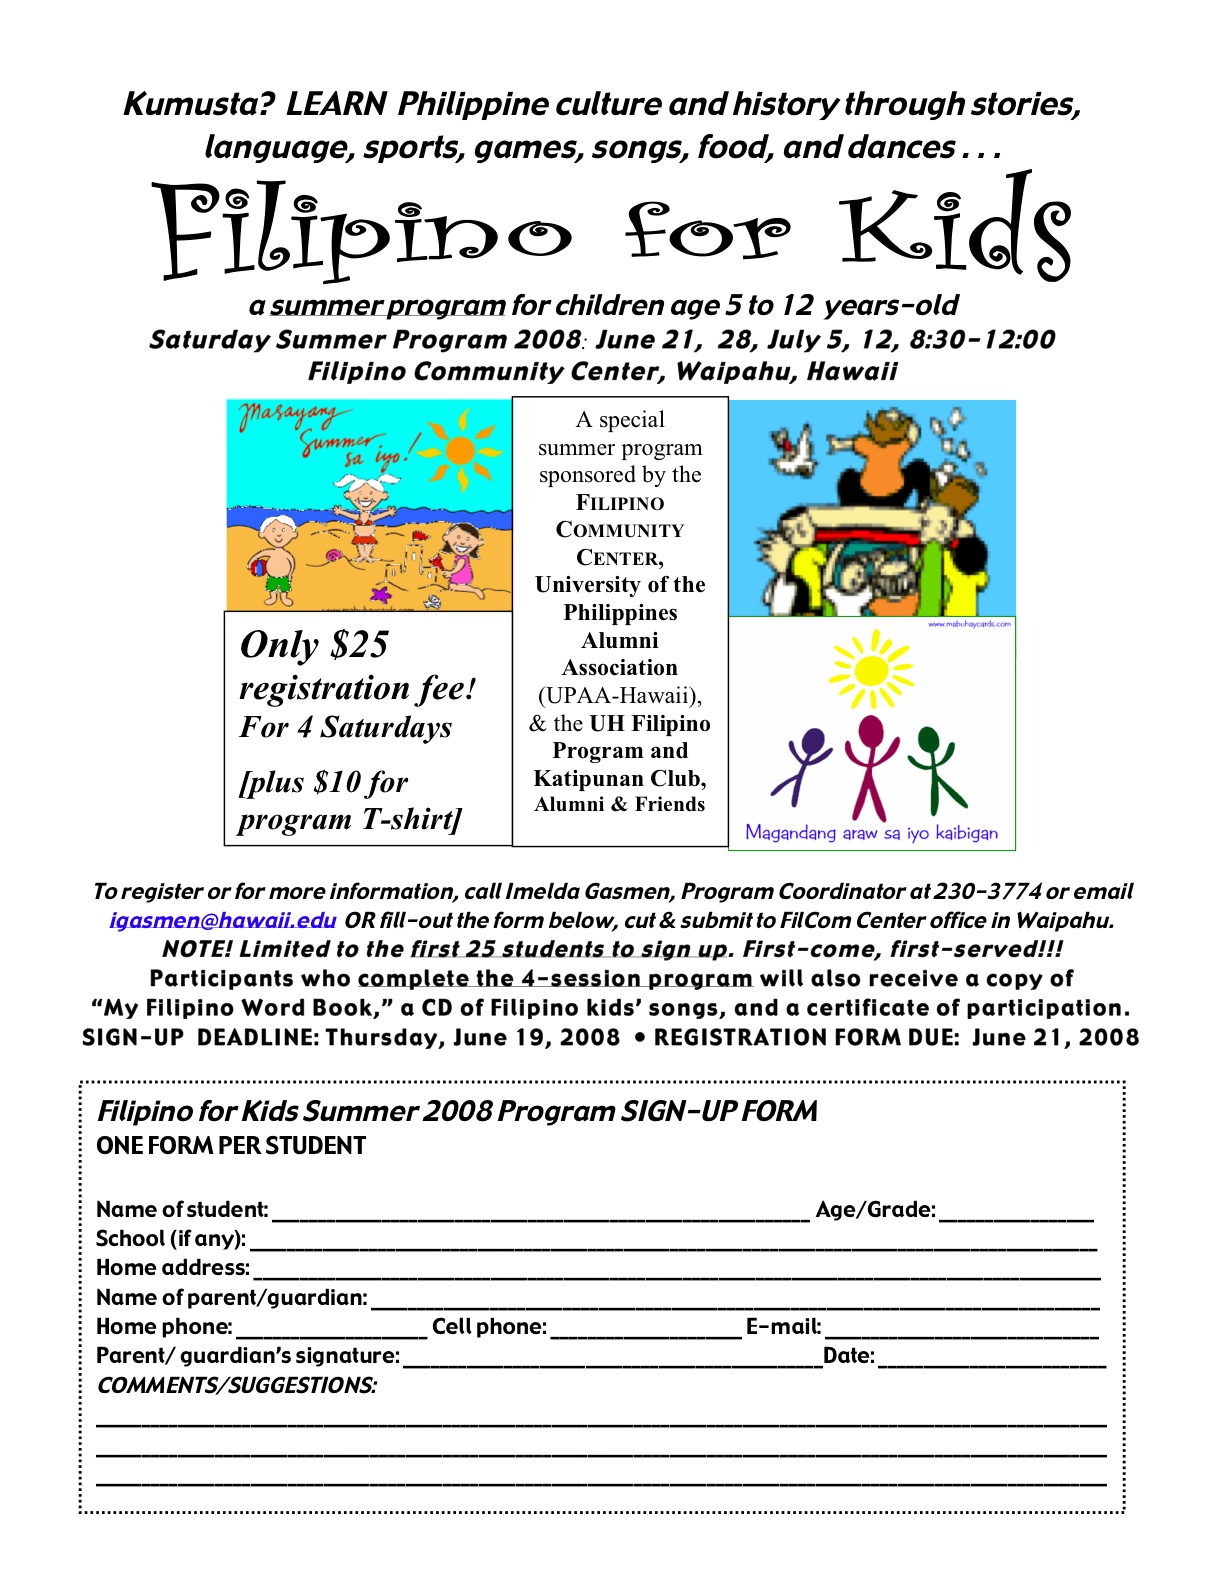 [Filipino_for_Kids_2008Flyer.jpg]